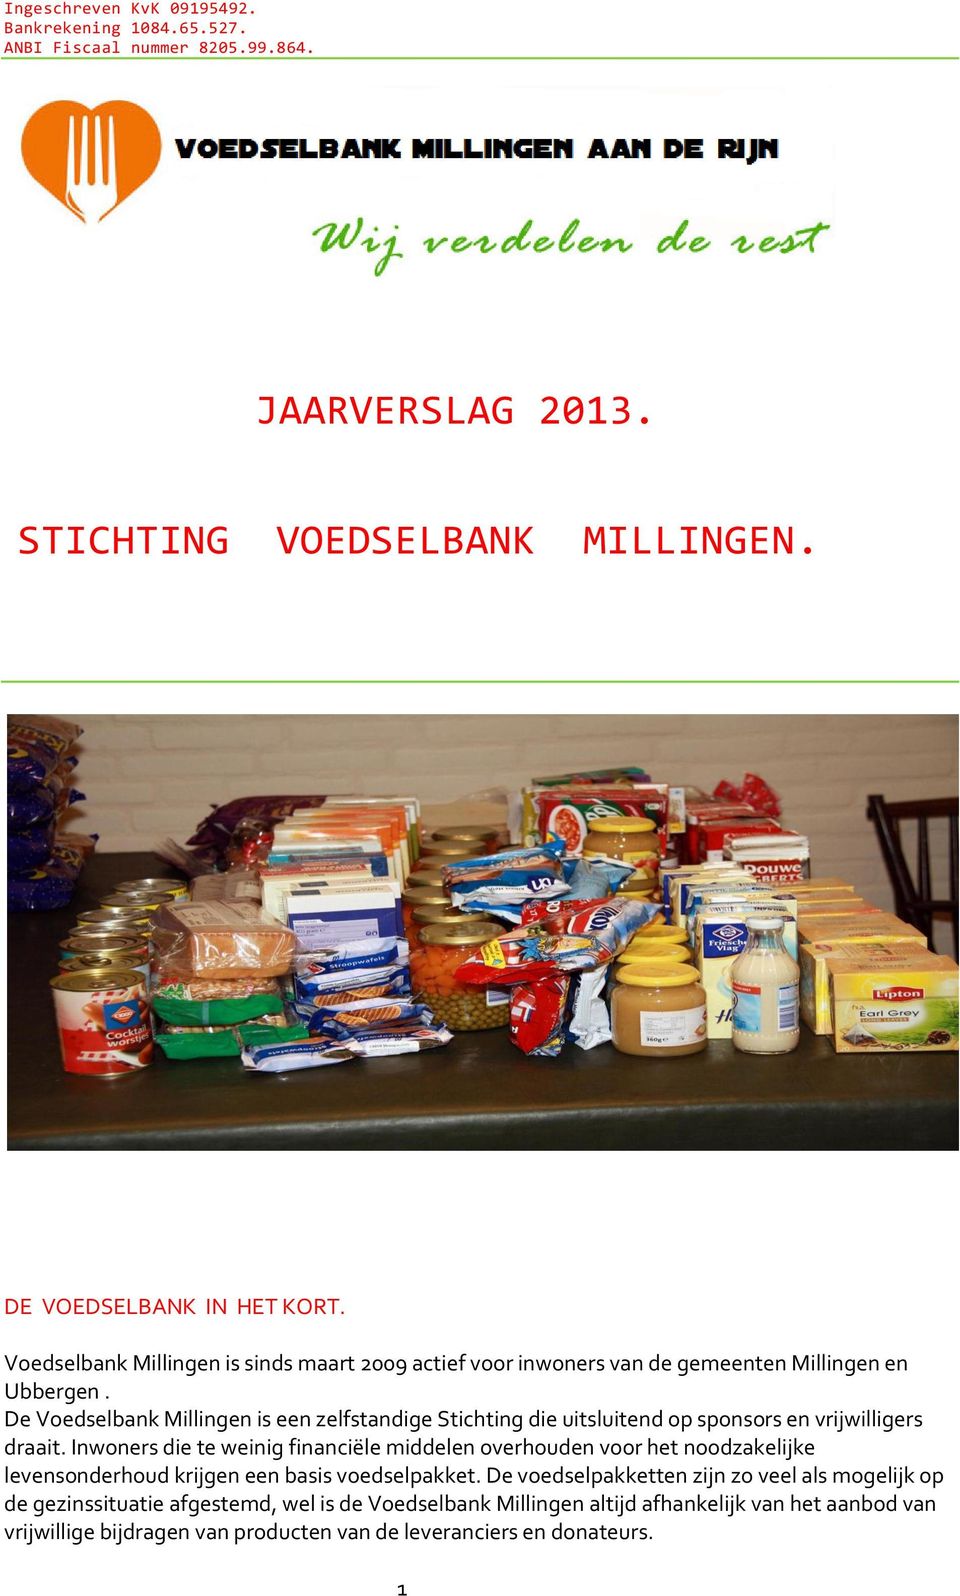 De Voedselbank Millingen is een zelfstandige Stichting die uitsluitend op sponsors en vrijwilligers draait.